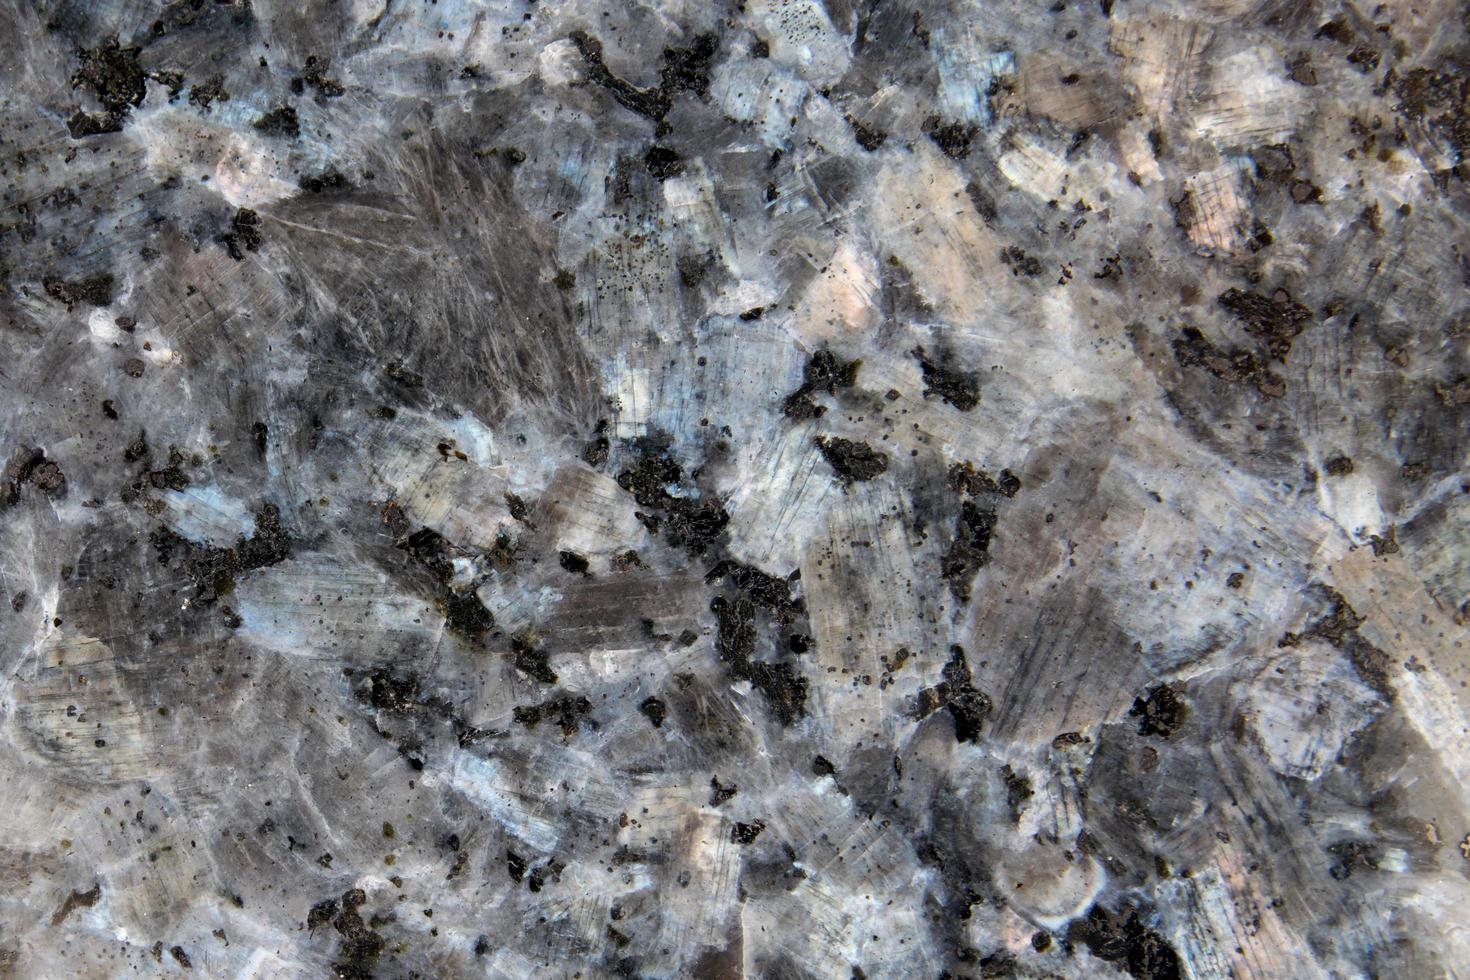 Polished granite texture photo